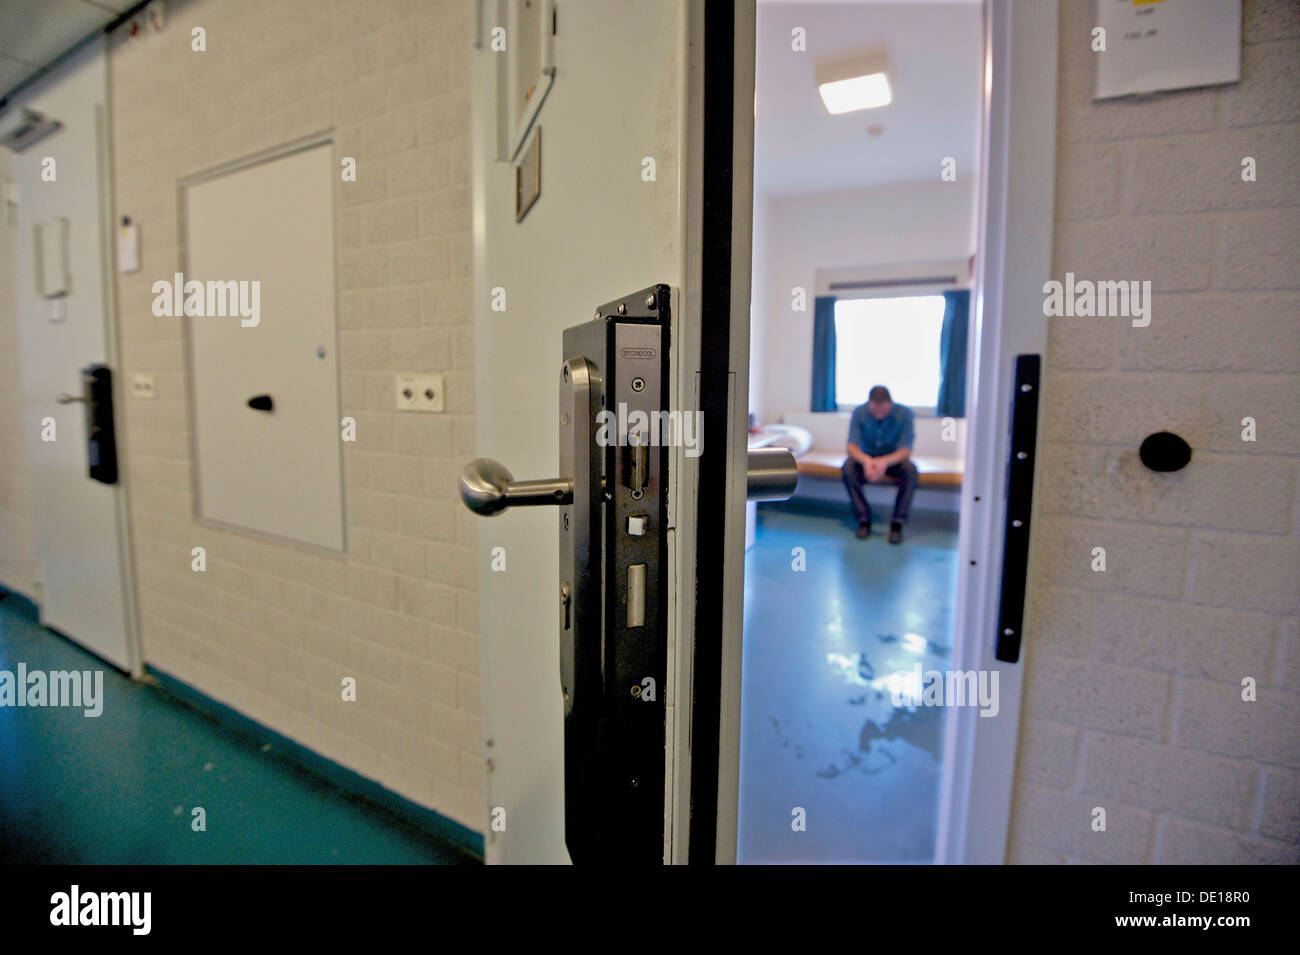 Holland-Scheveningen. 15-05-12. A man in prison. Stock Photo